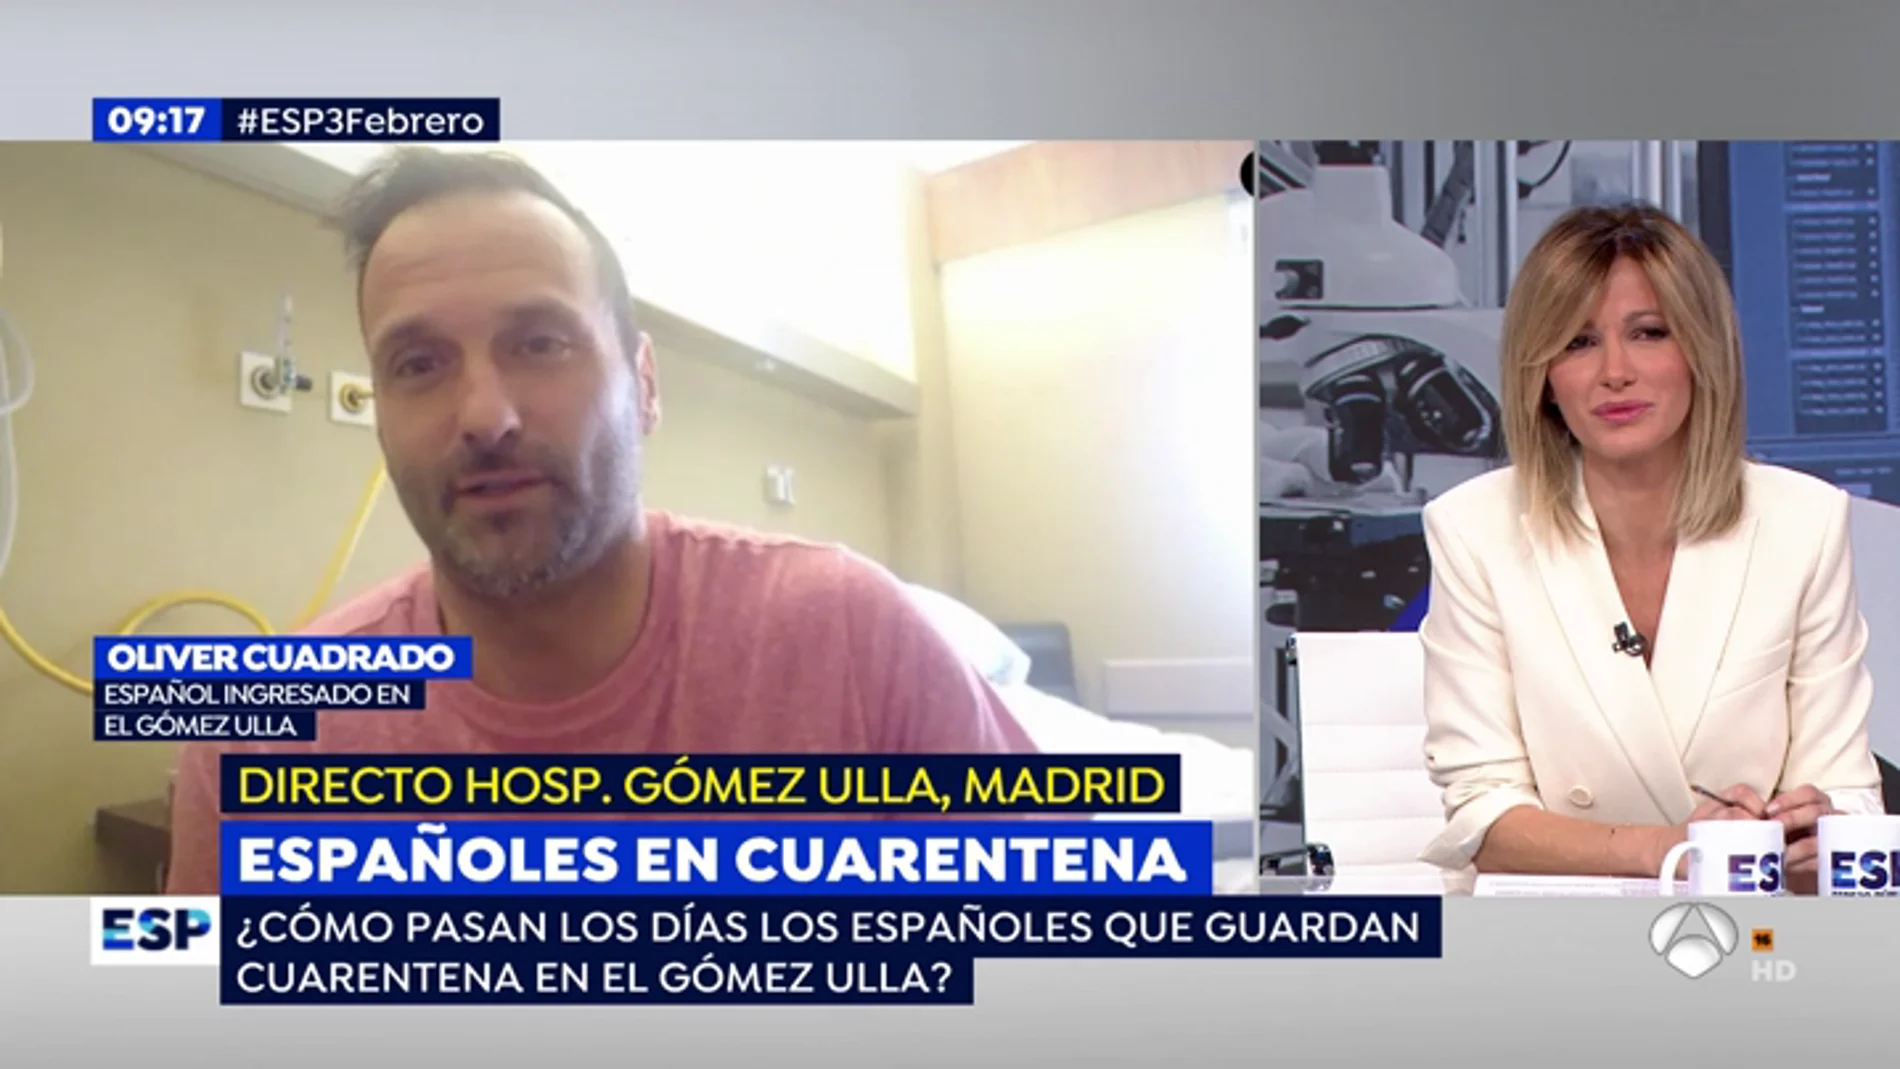 Así viven la cuarentena por el coronavirus los españoles ingresados en el Gómez Ulla: "Nos han dejado claro que somos personas sanas"